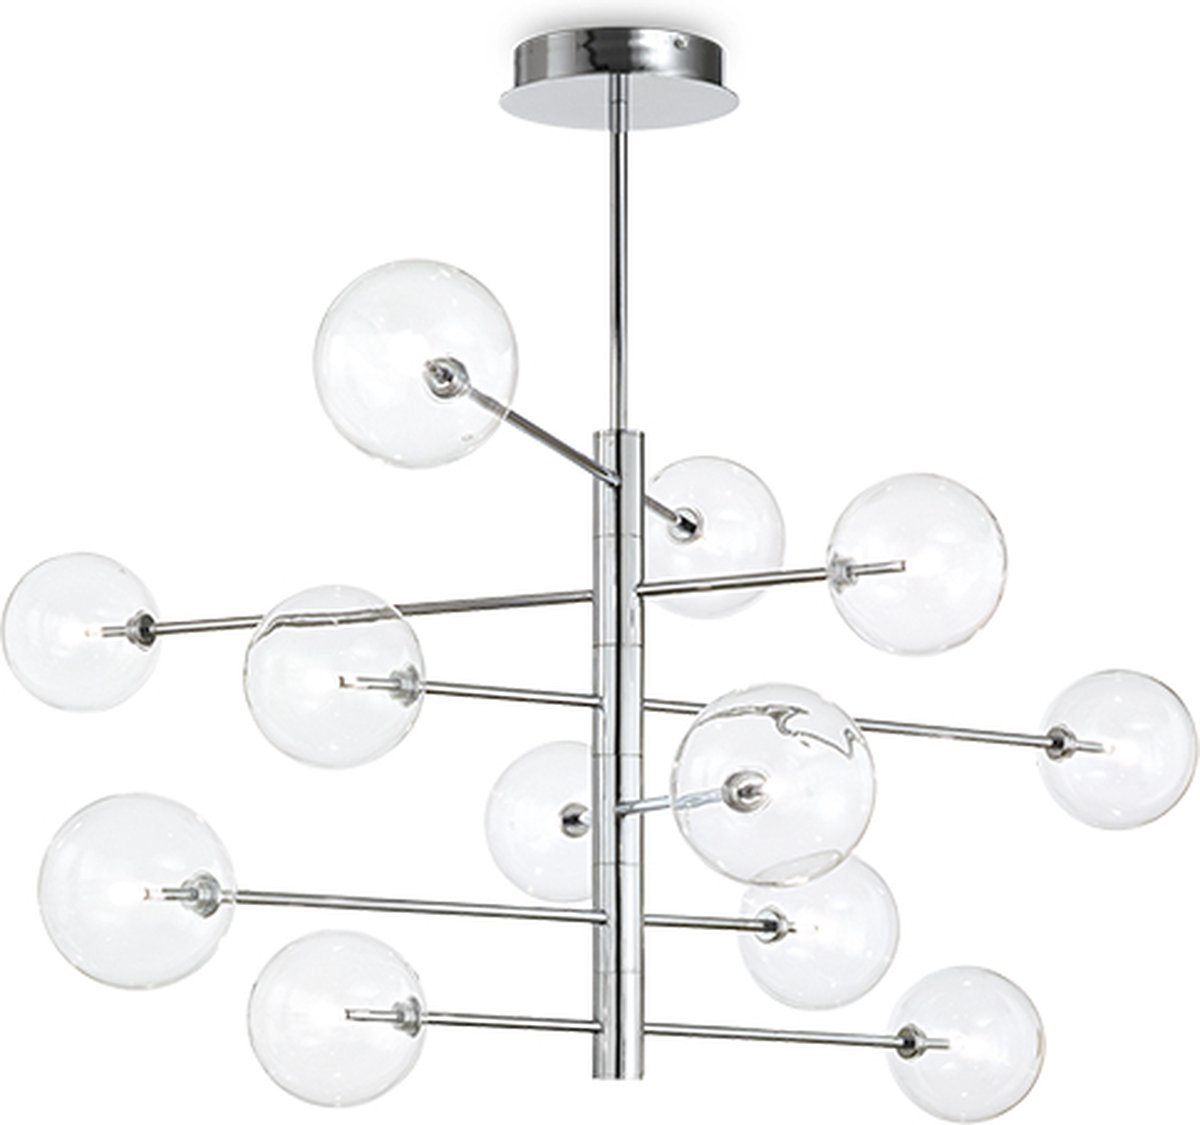 Ideal Lux - Equinoxe - Hanglamp - Metaal - G4 - Chroom - Voor binnen - Lampen - Woonkamer - Eetkamer - Keuken